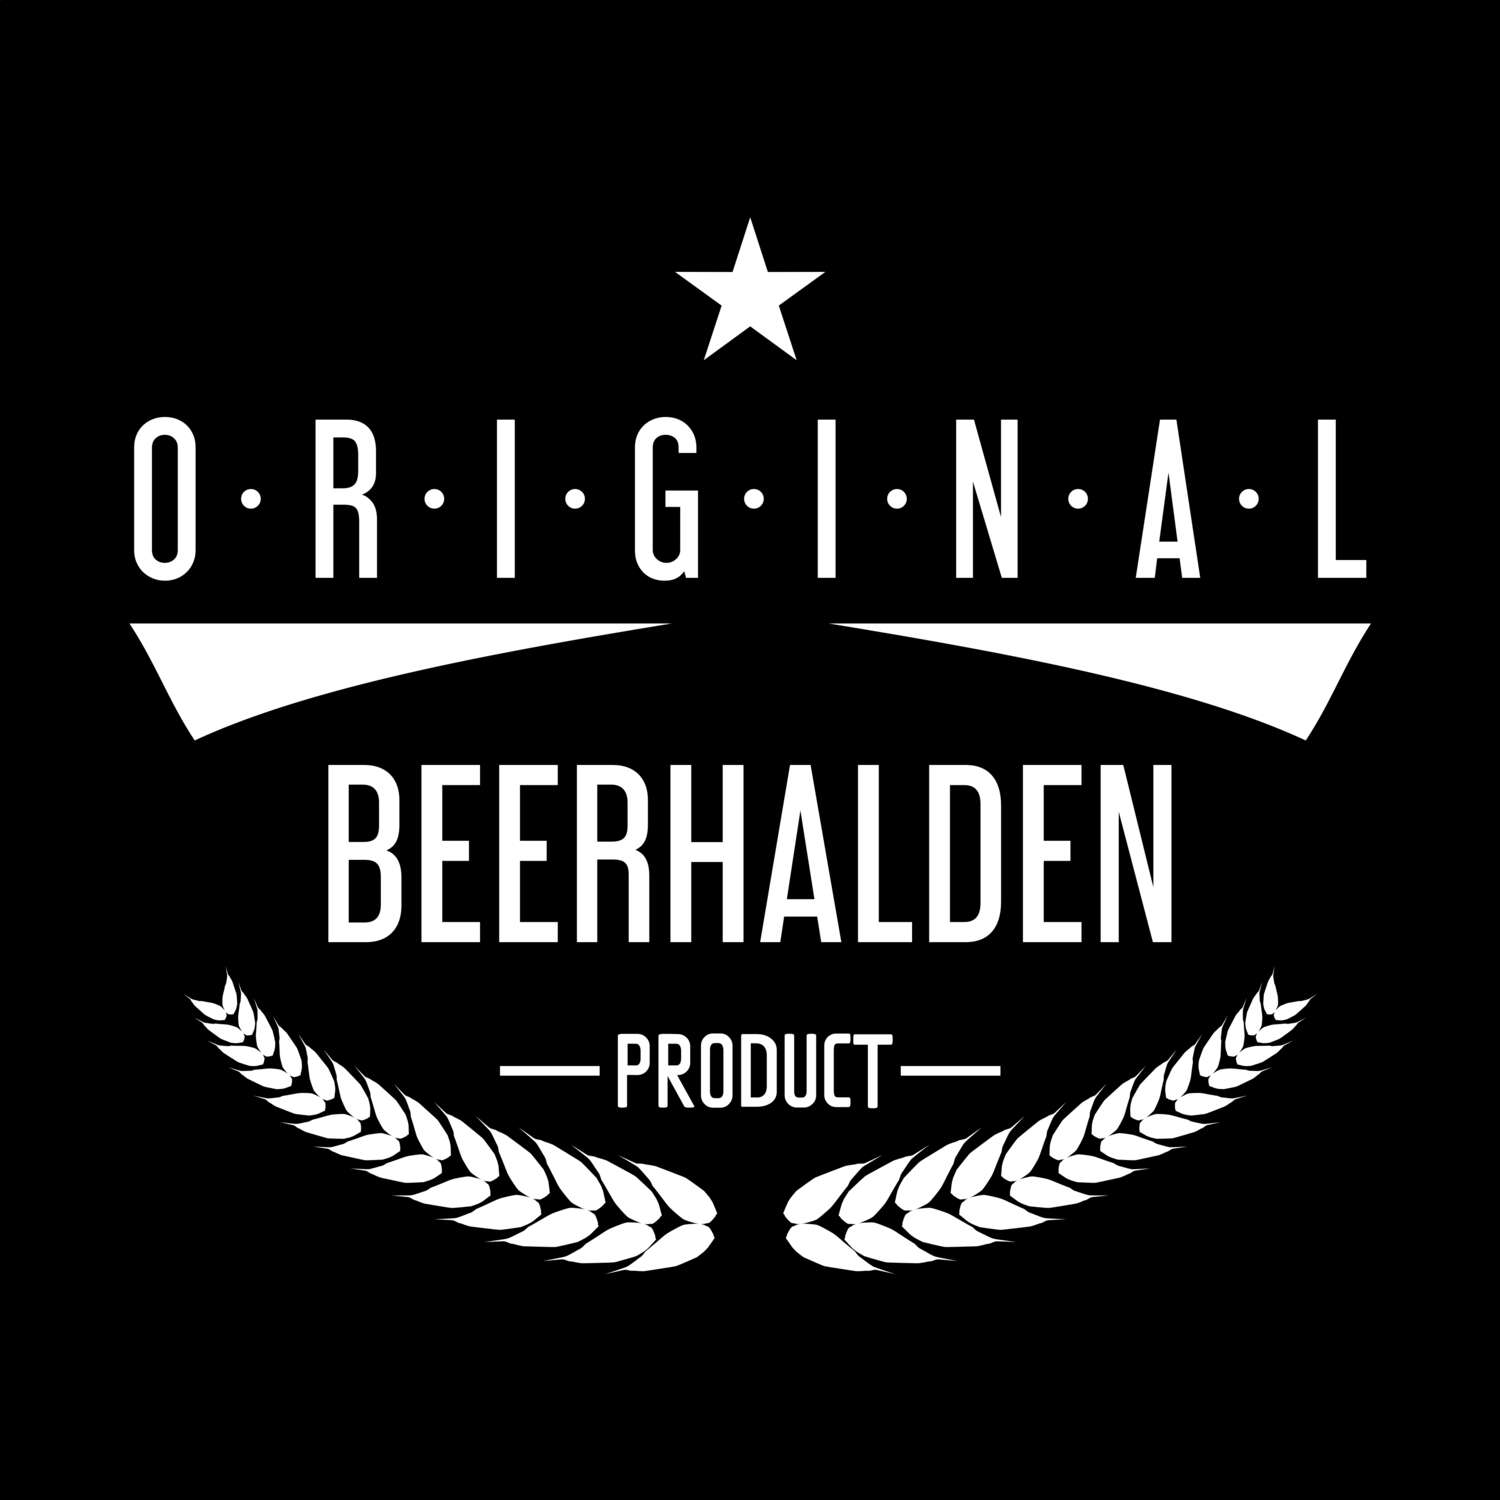 Beerhalden T-Shirt »Original Product«